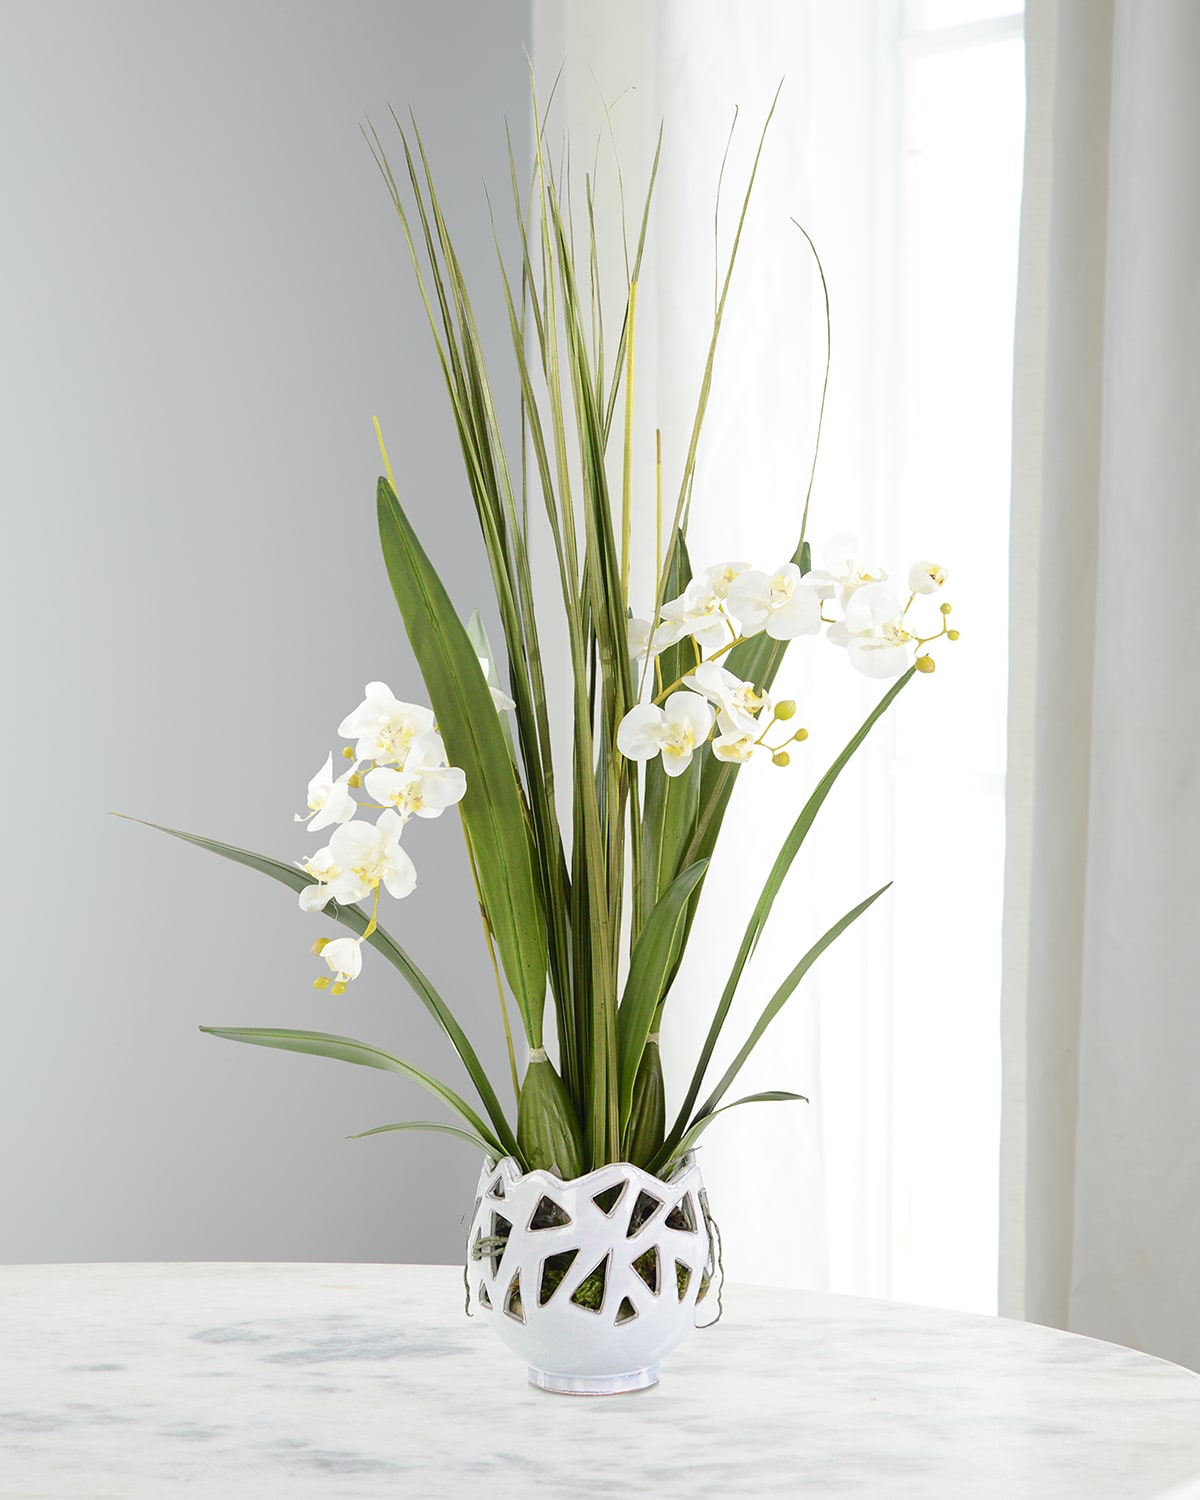 Orchids & Lace Faux Floral Arrangement in Ceramic Vase - 45"T